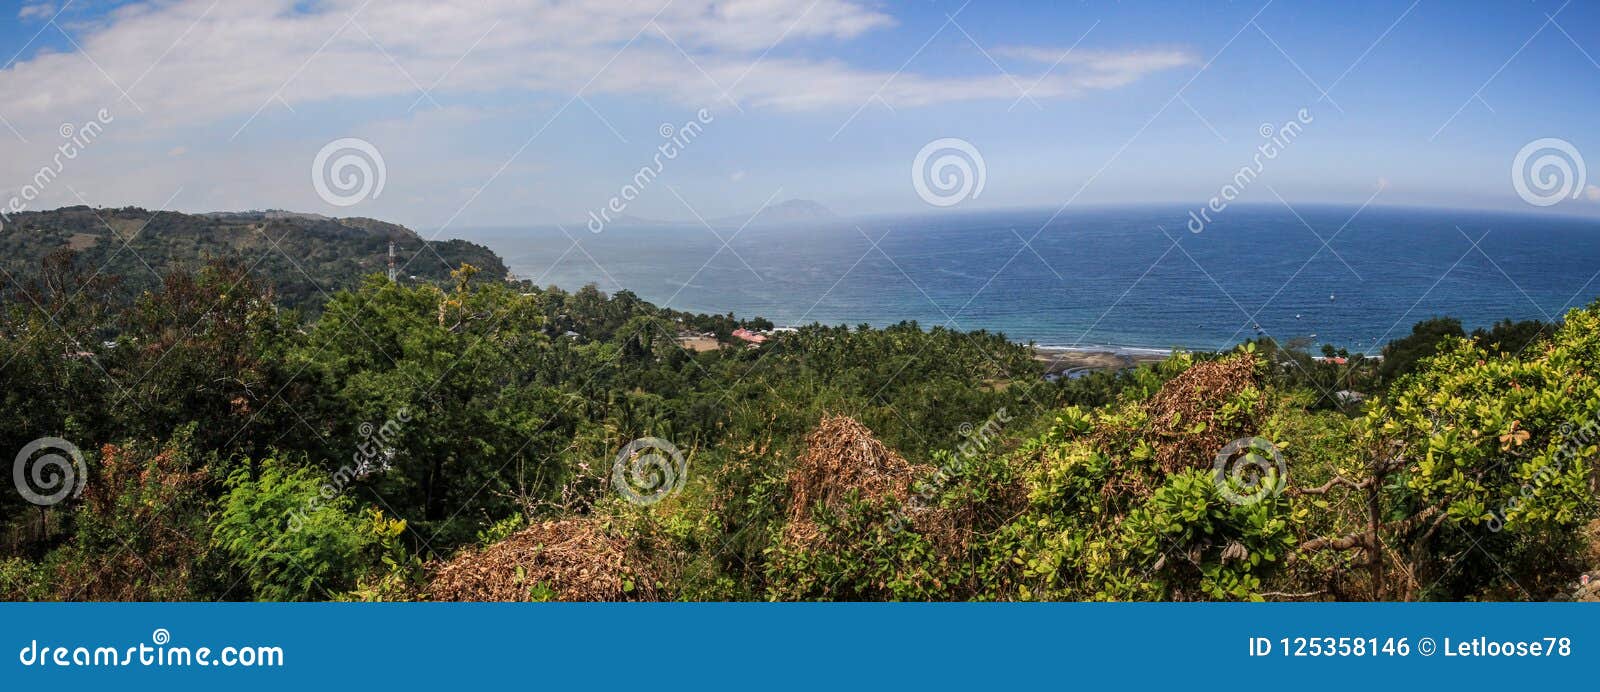 panorama on beautiful bay near moni, nusa tenggara, flores island, indonesia